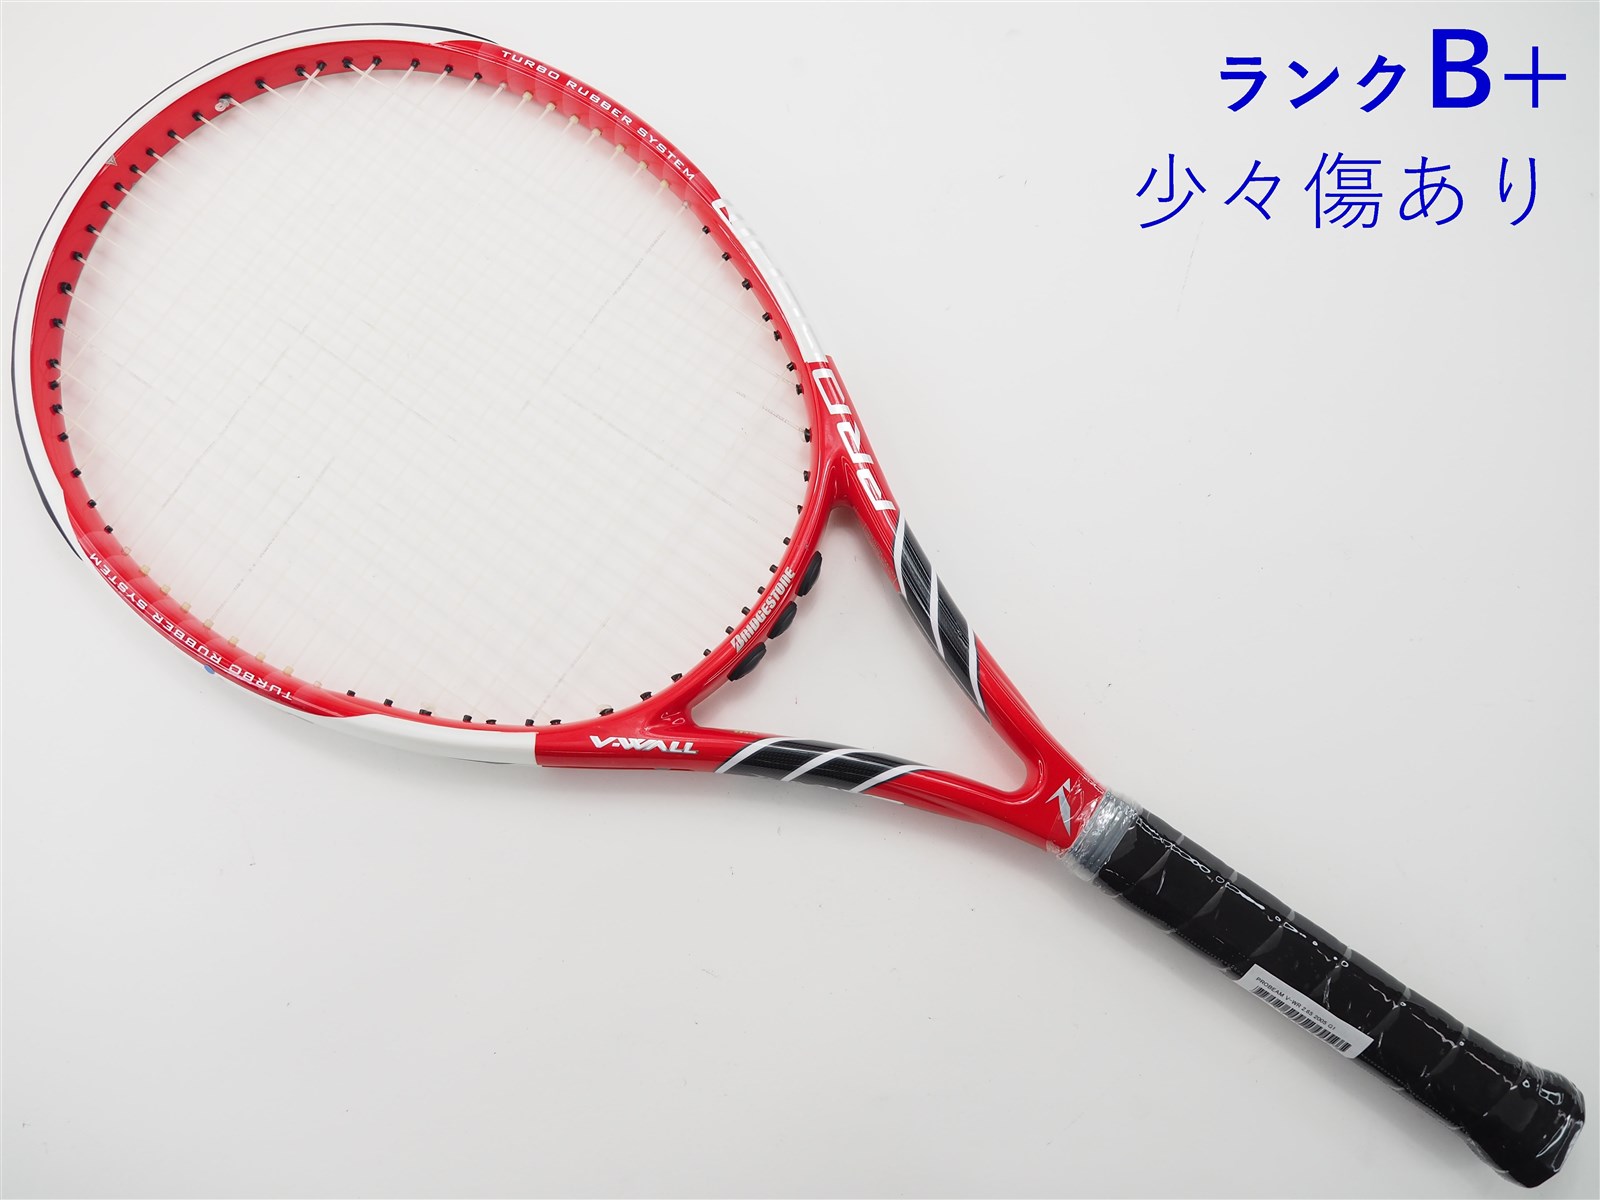 テニスラケット ブリヂストン プロビーム V-WR 2.65 2005年モデル (G1)BRIDGESTONE PROBEAM V-WR 2.65 2005